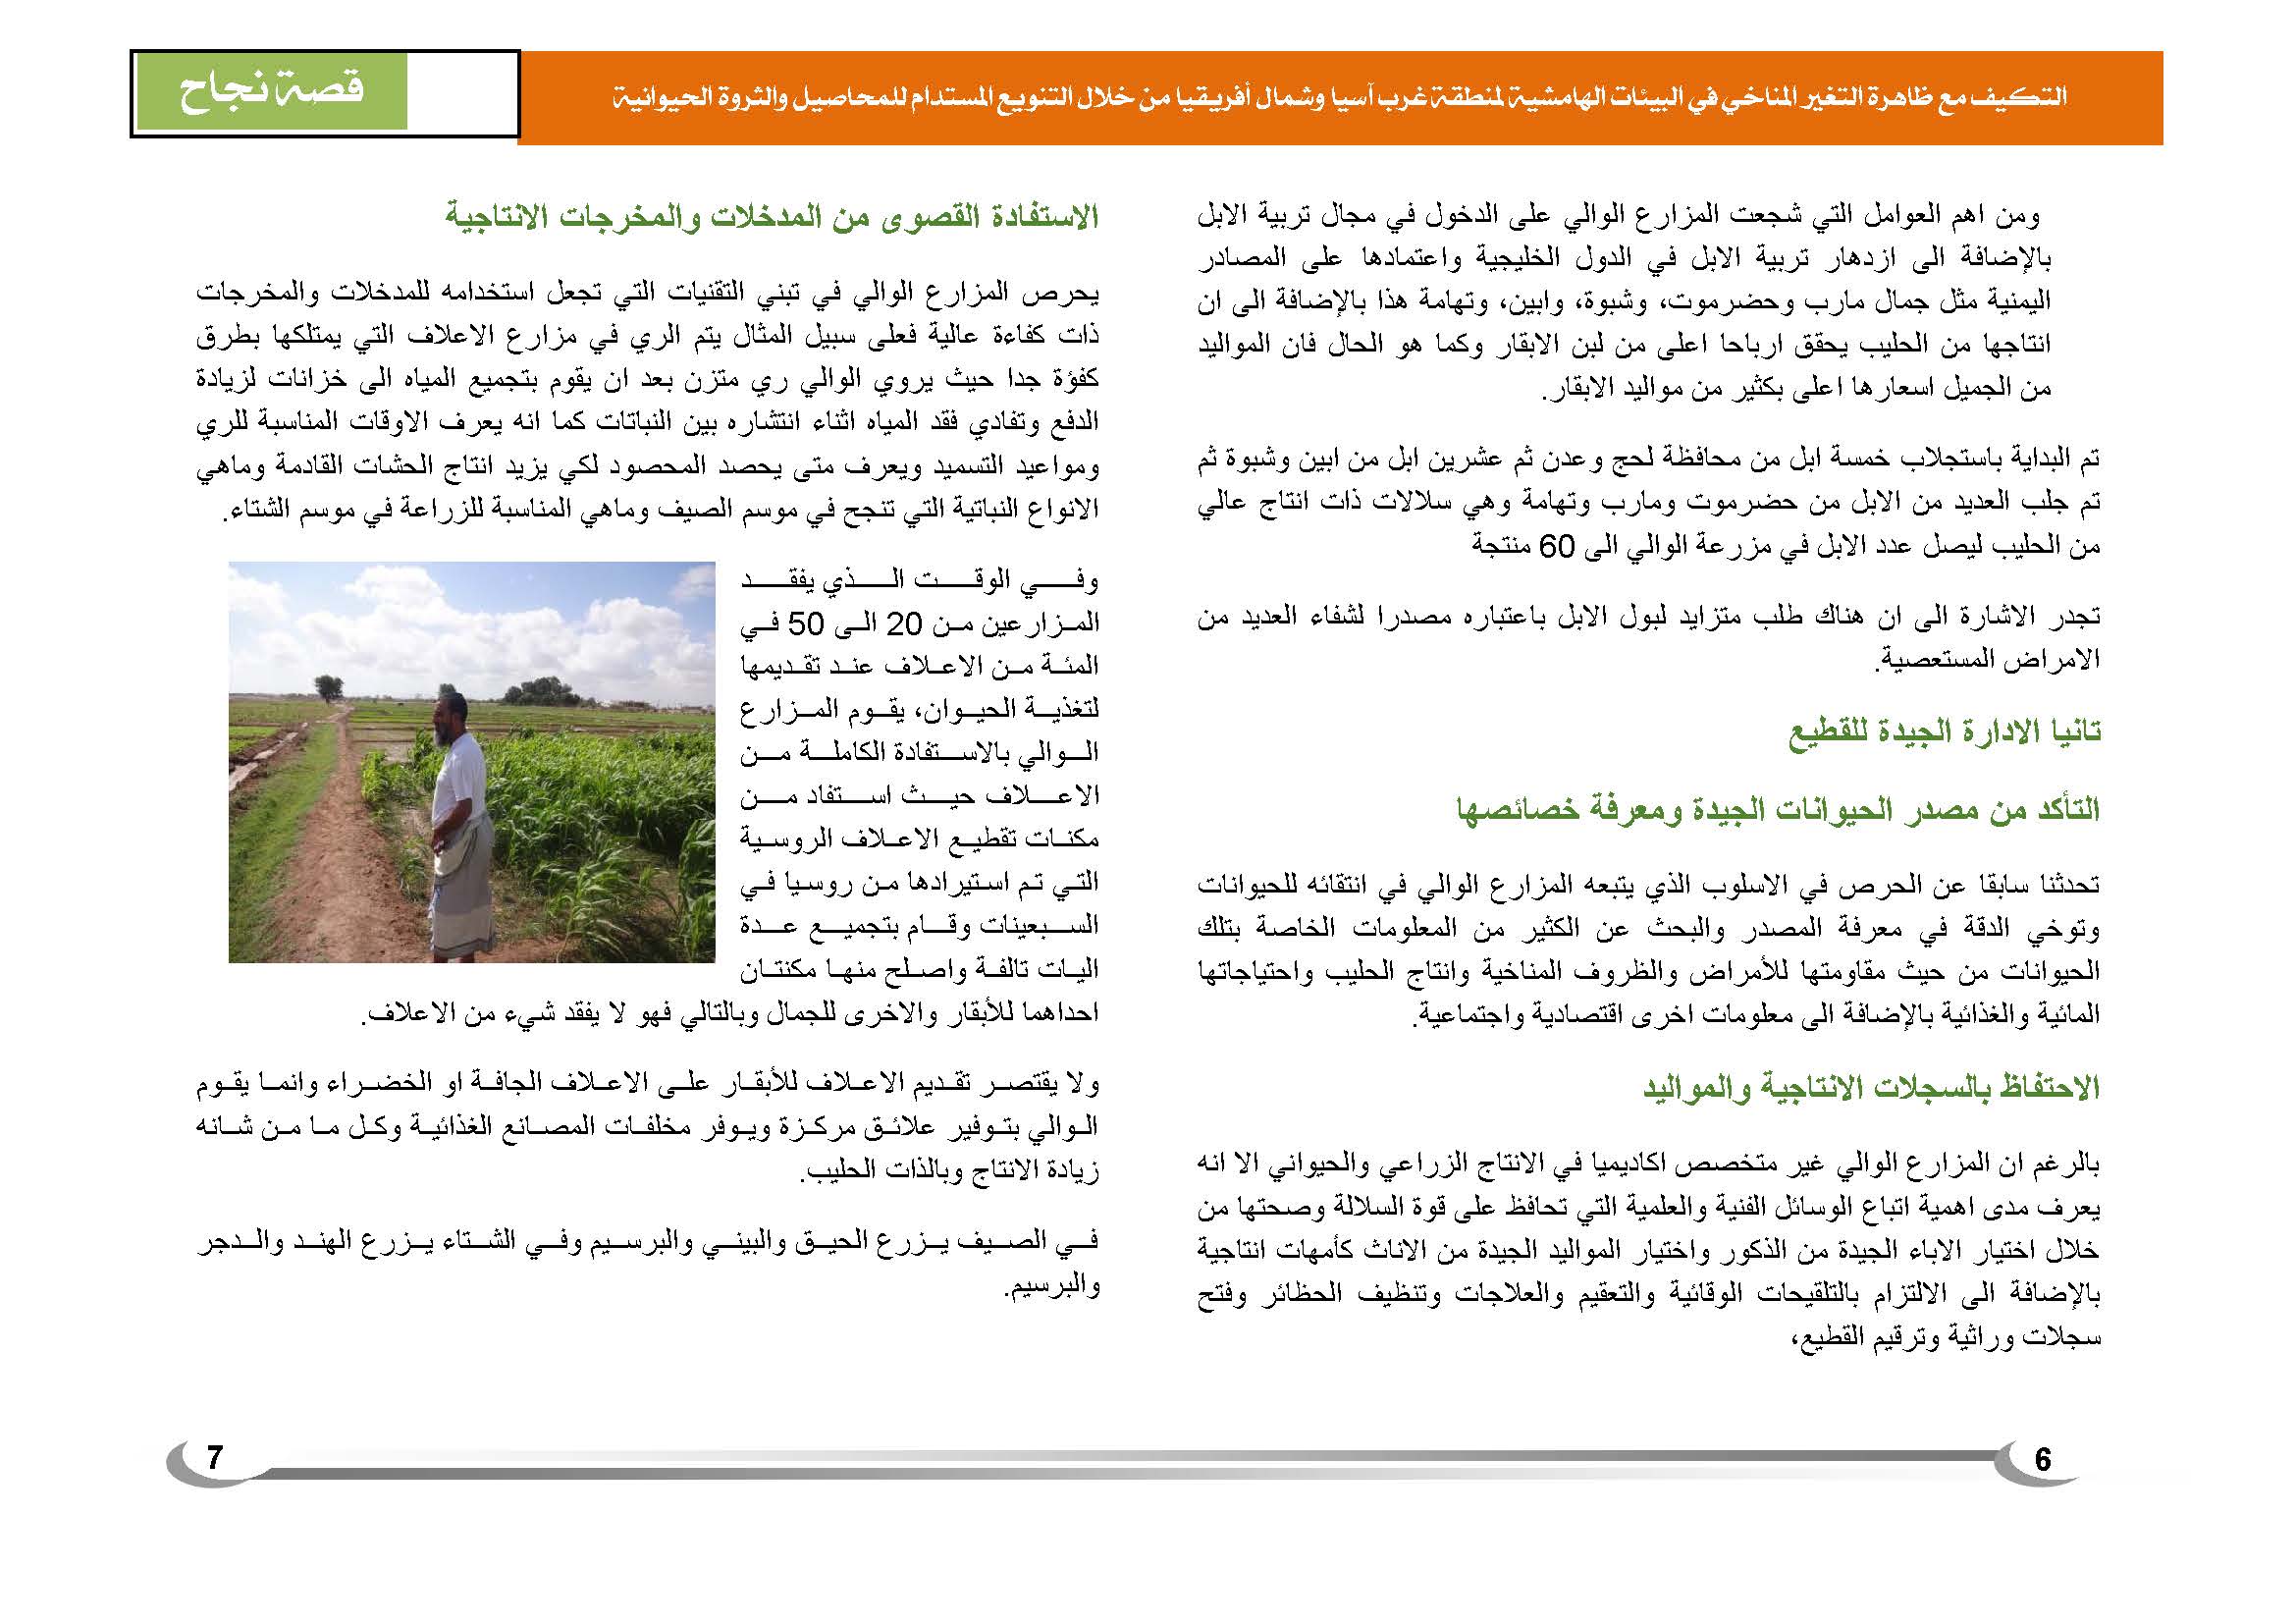 قصة نجاح في الإنتاج الزراعي في اليمن (1)_Page_7